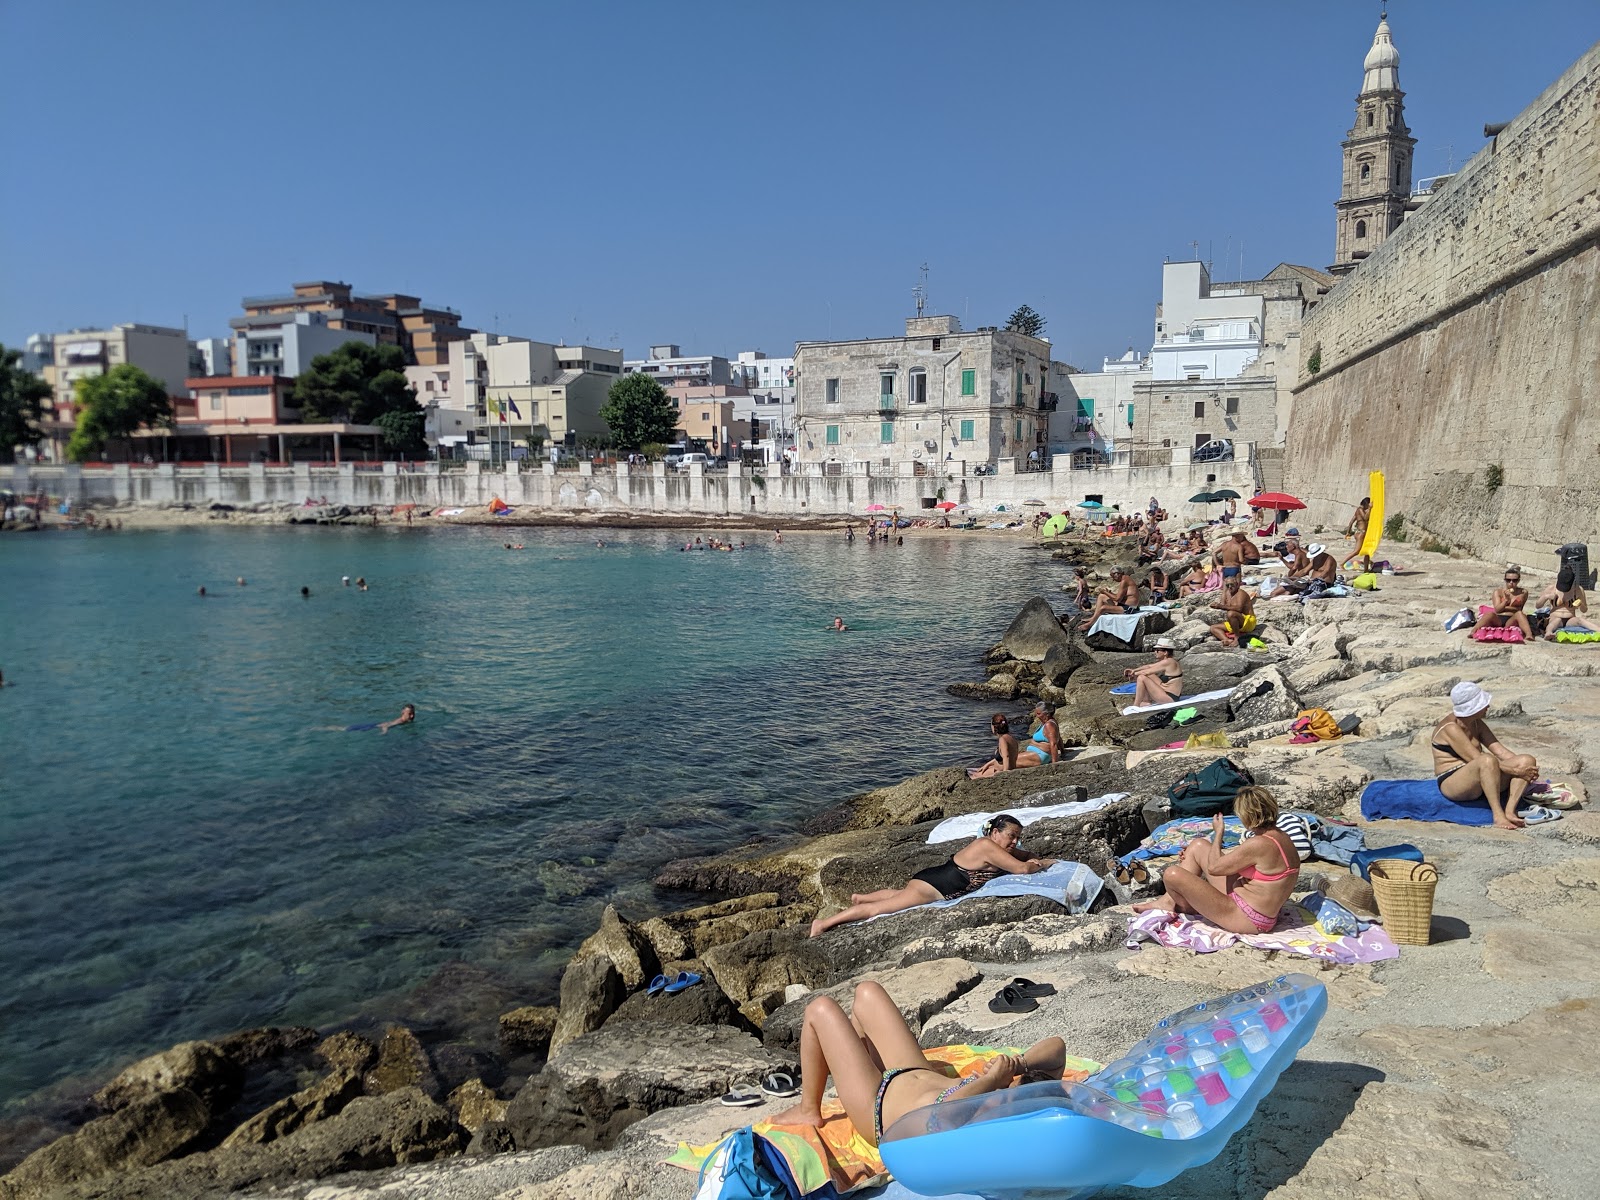 Spiaggia Cala Porta Vecchia的照片 带有蓝色纯水表面